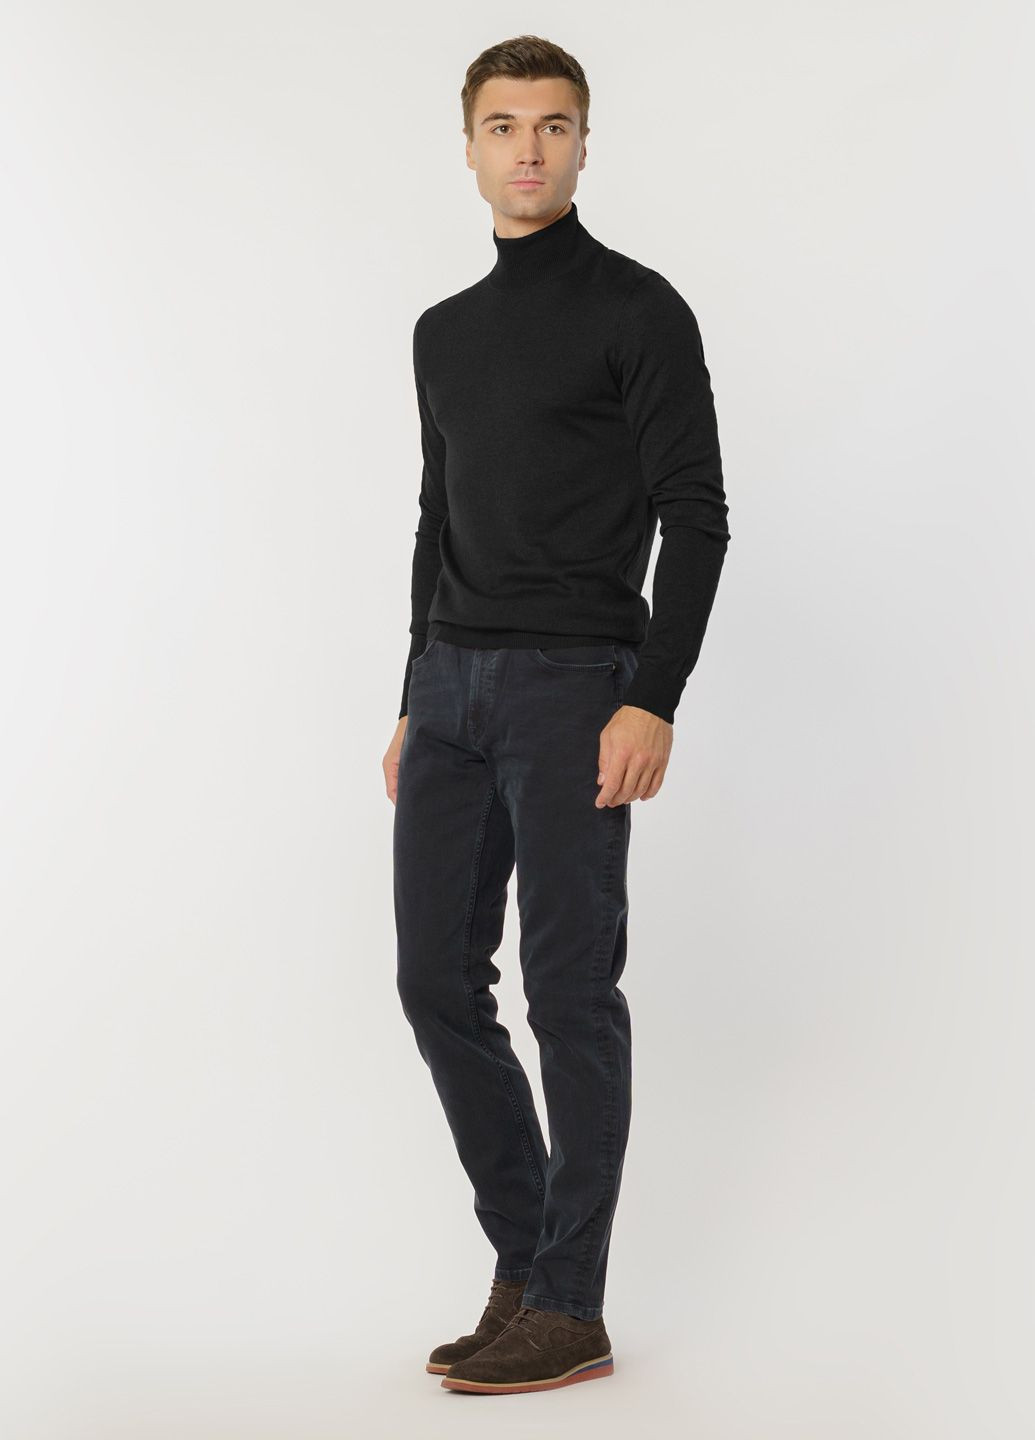 Чорний зимовий светр чоловічий чорний Arber T-neck N-AVT-49